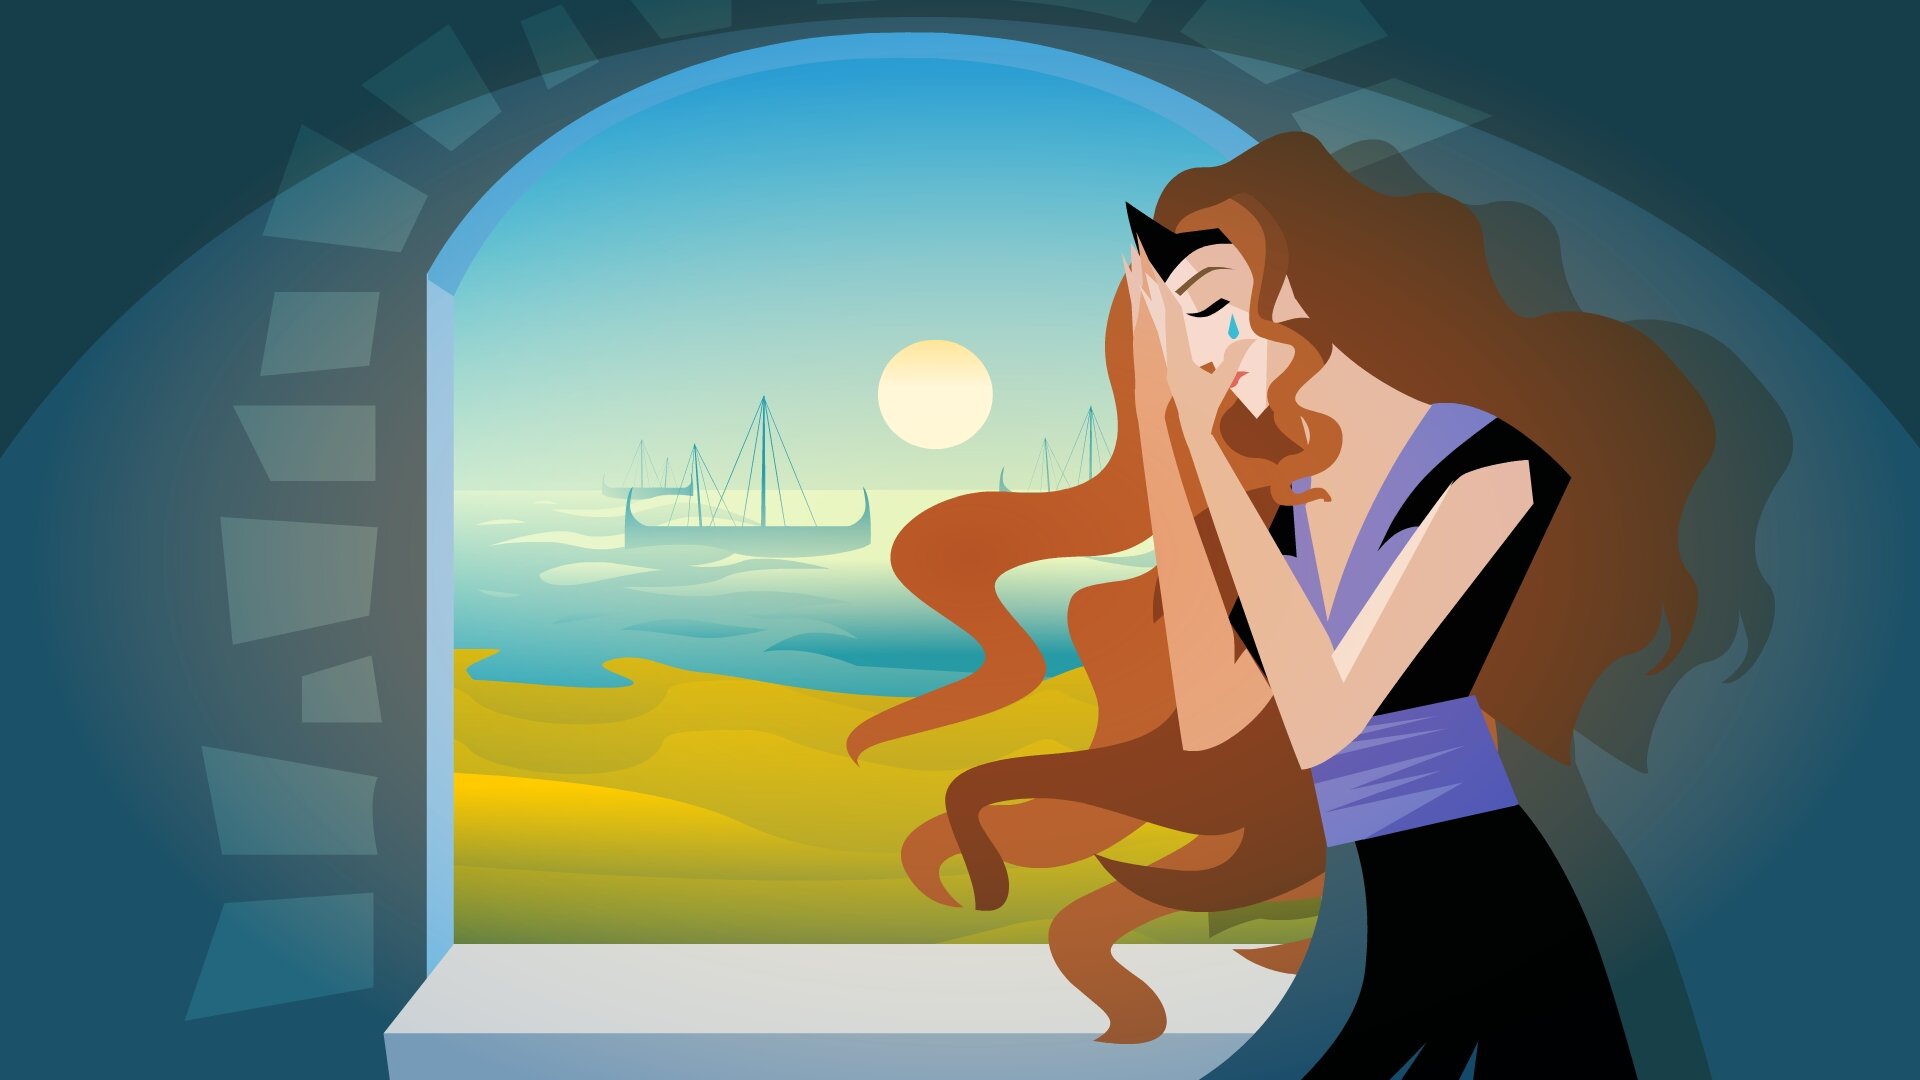 Ilustracja przedstawia płaczącą Dydonę. Kobieta spogląda na morze. Na jej twarzy widoczne są łzy. W tle widać odpływające statki.